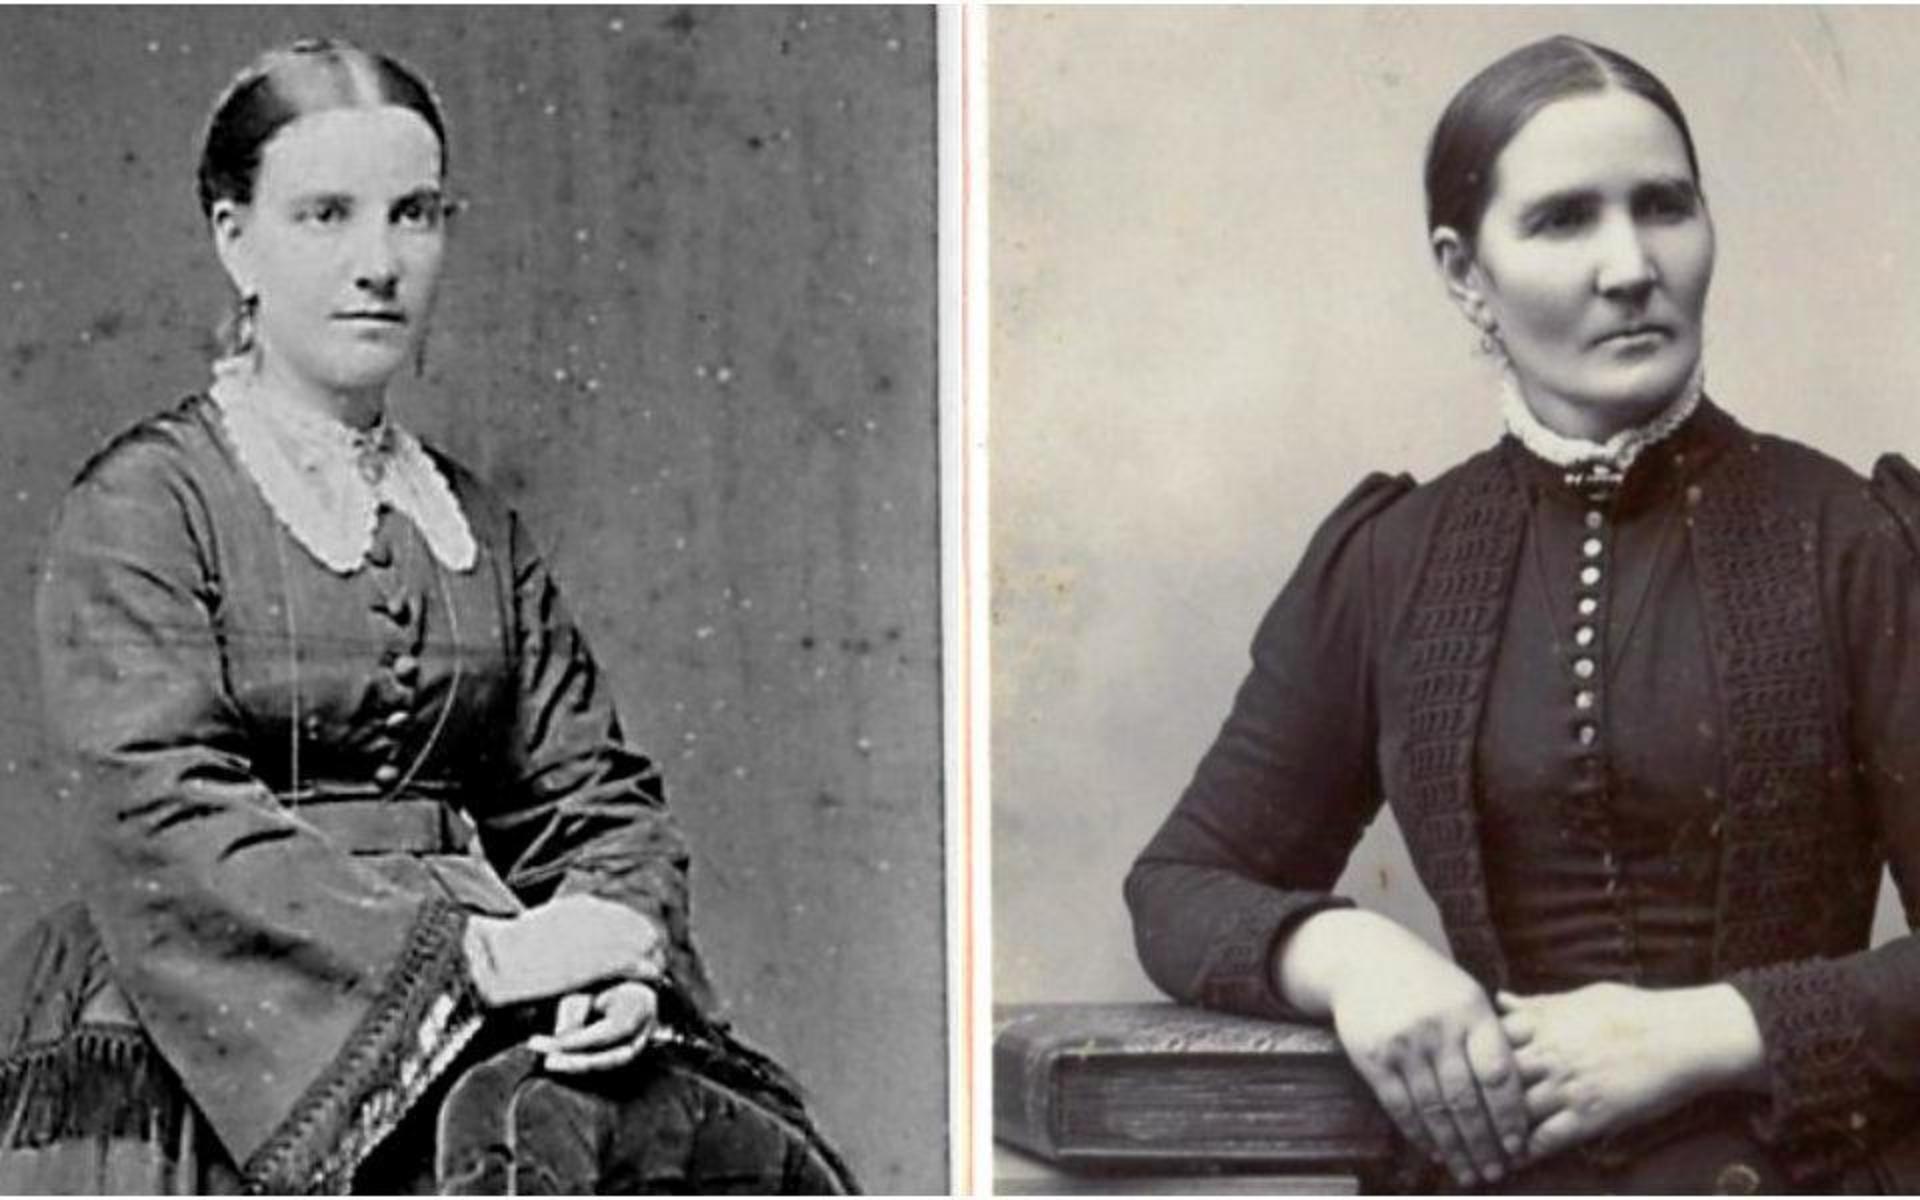 Systrarna Hanna och Ingrid Frummerin startade butiken 1877. Då hyrde de ett rum i fastigheten de senaste köpte. 